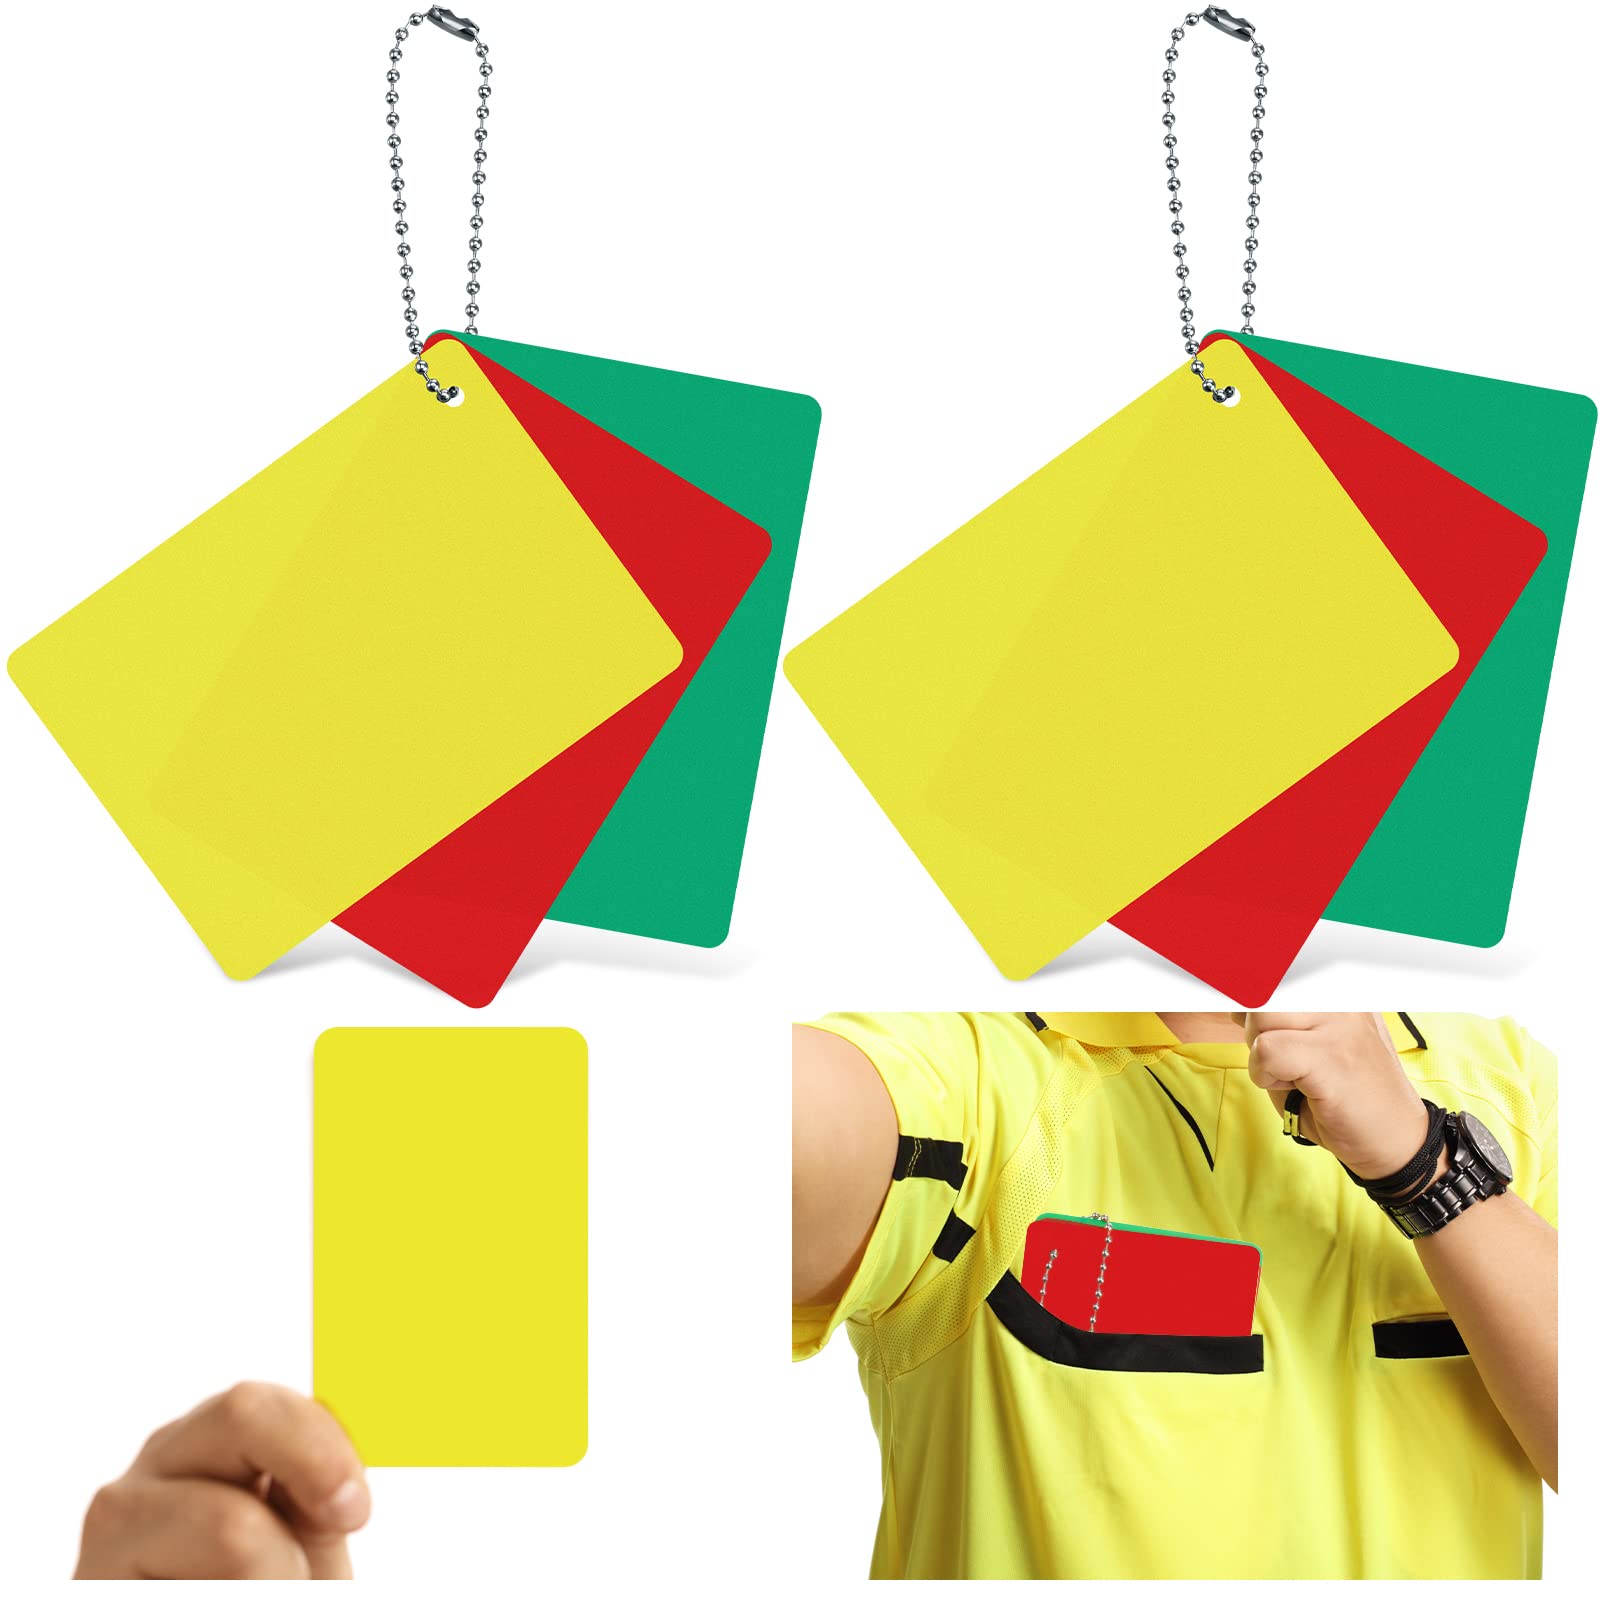 Referee Warning Card